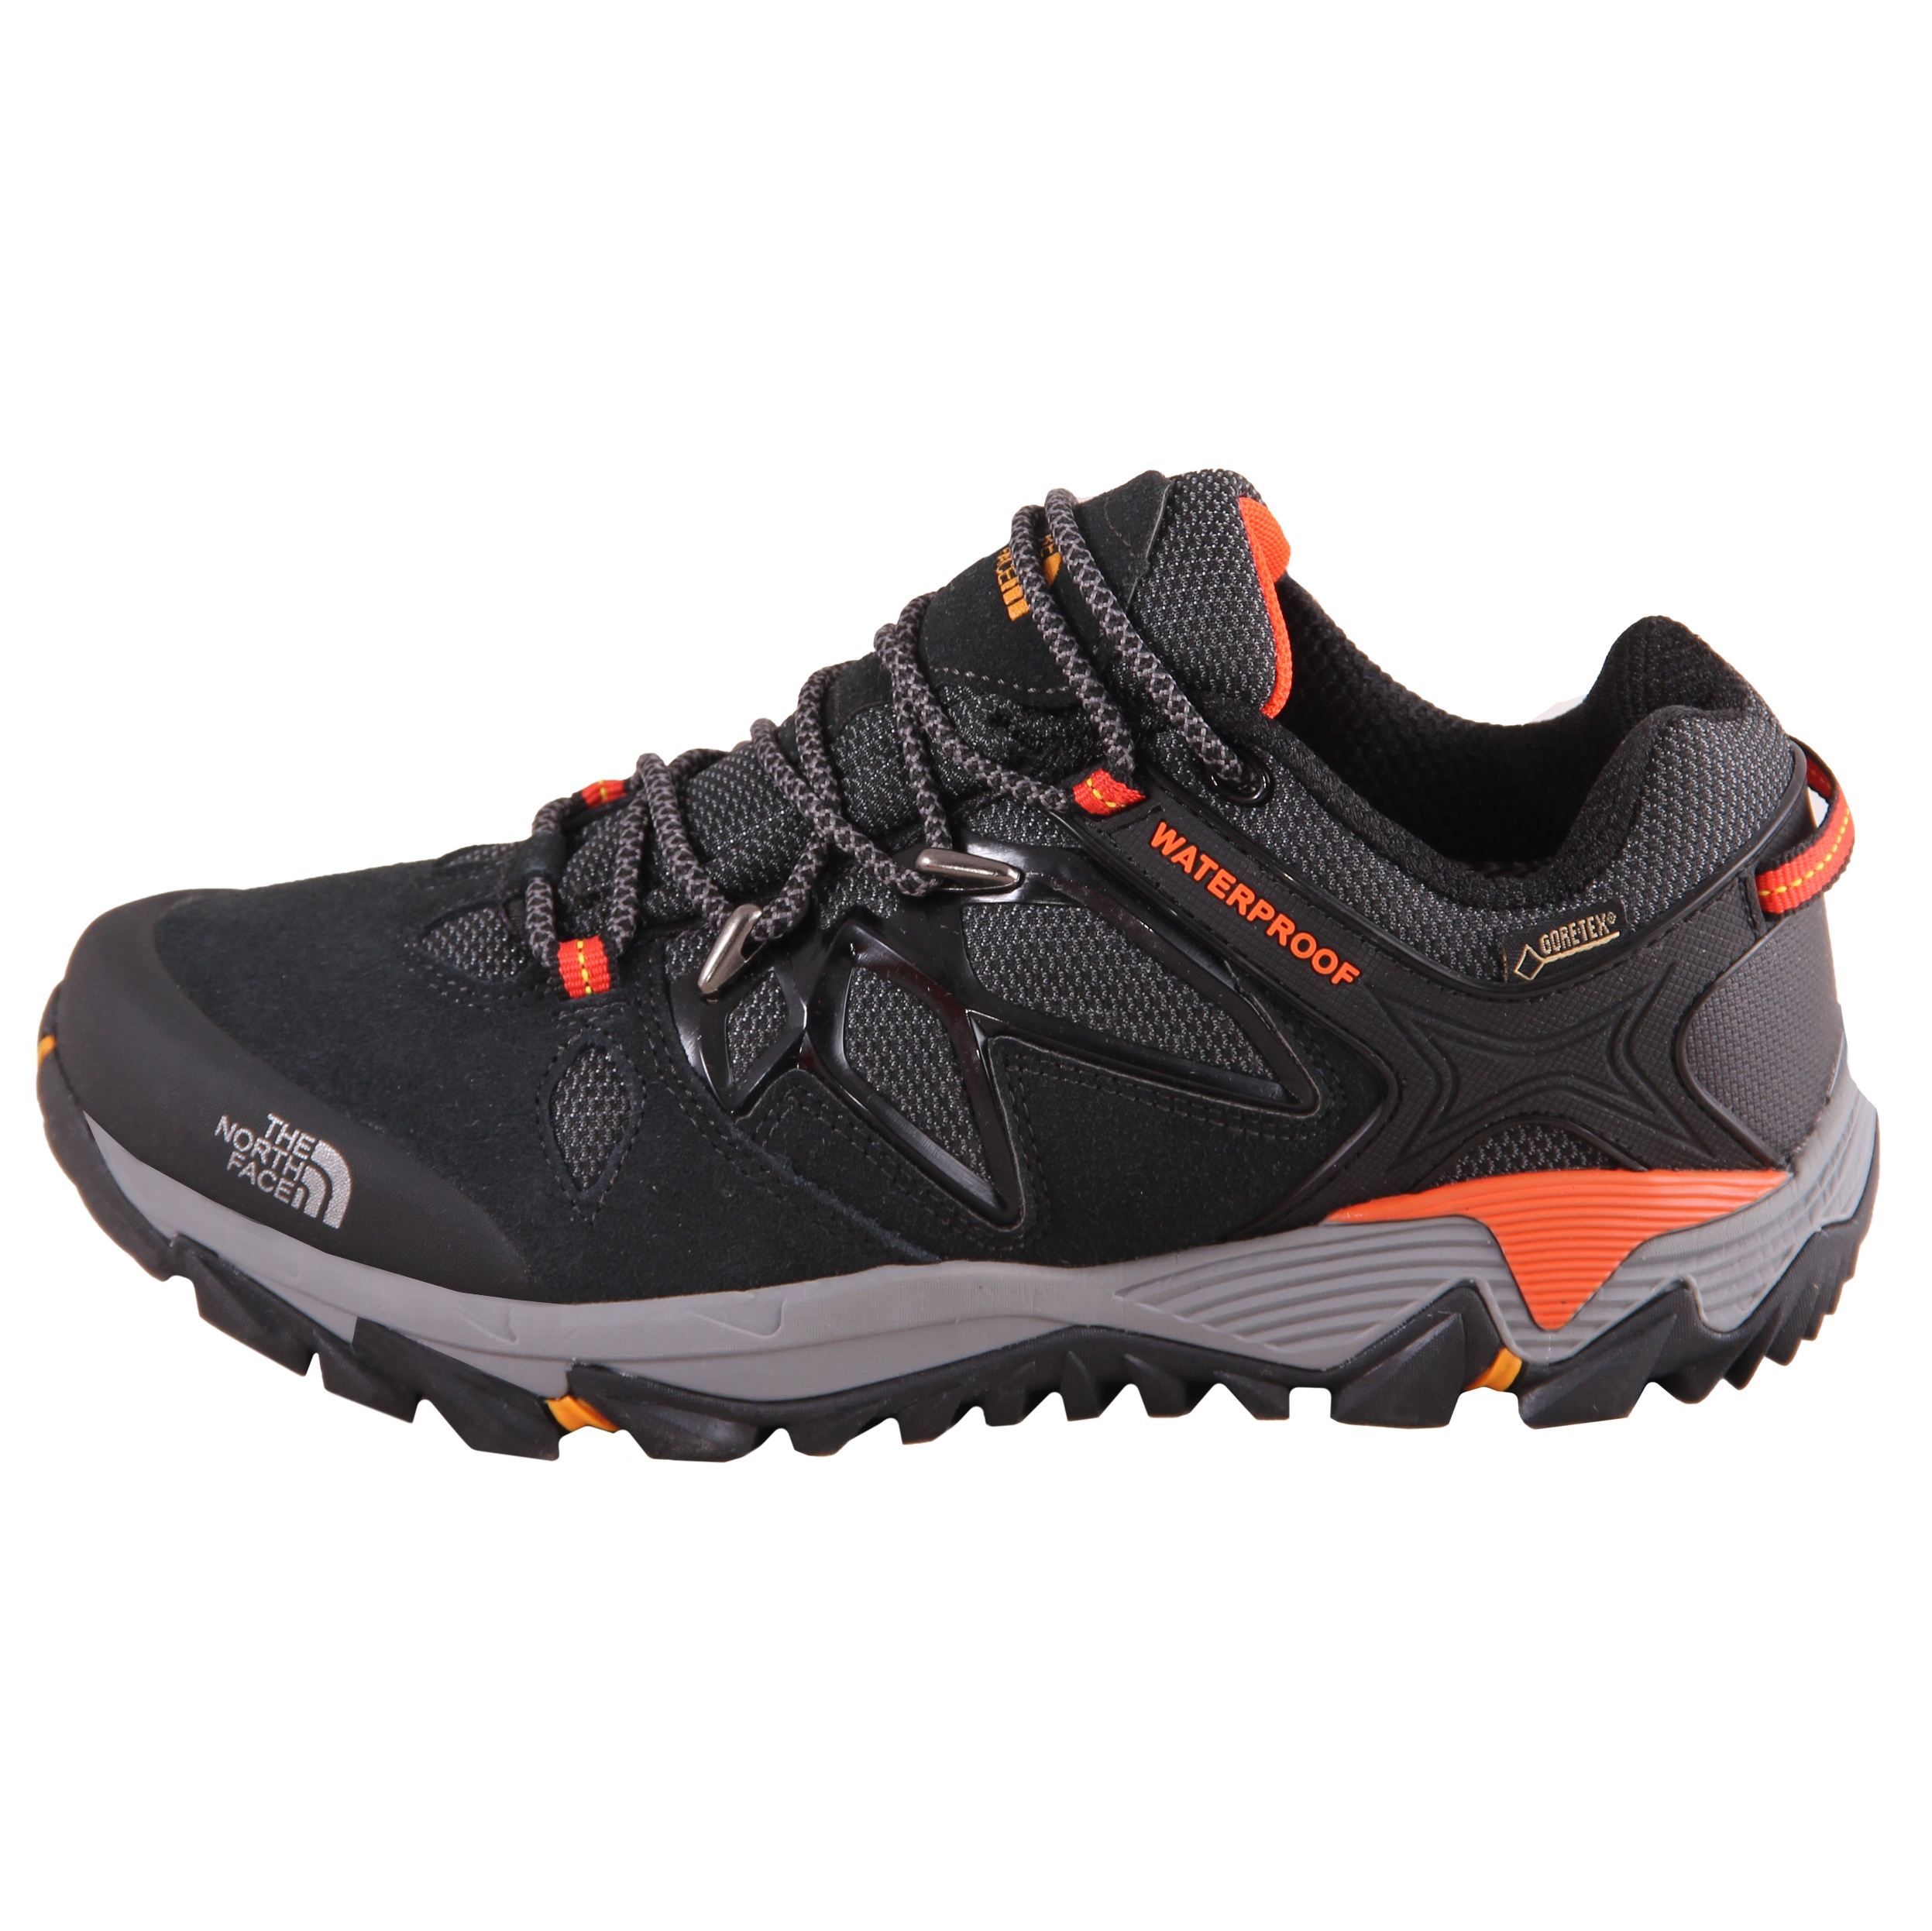 کفش کوهنوردی مردانه کد 21-9882